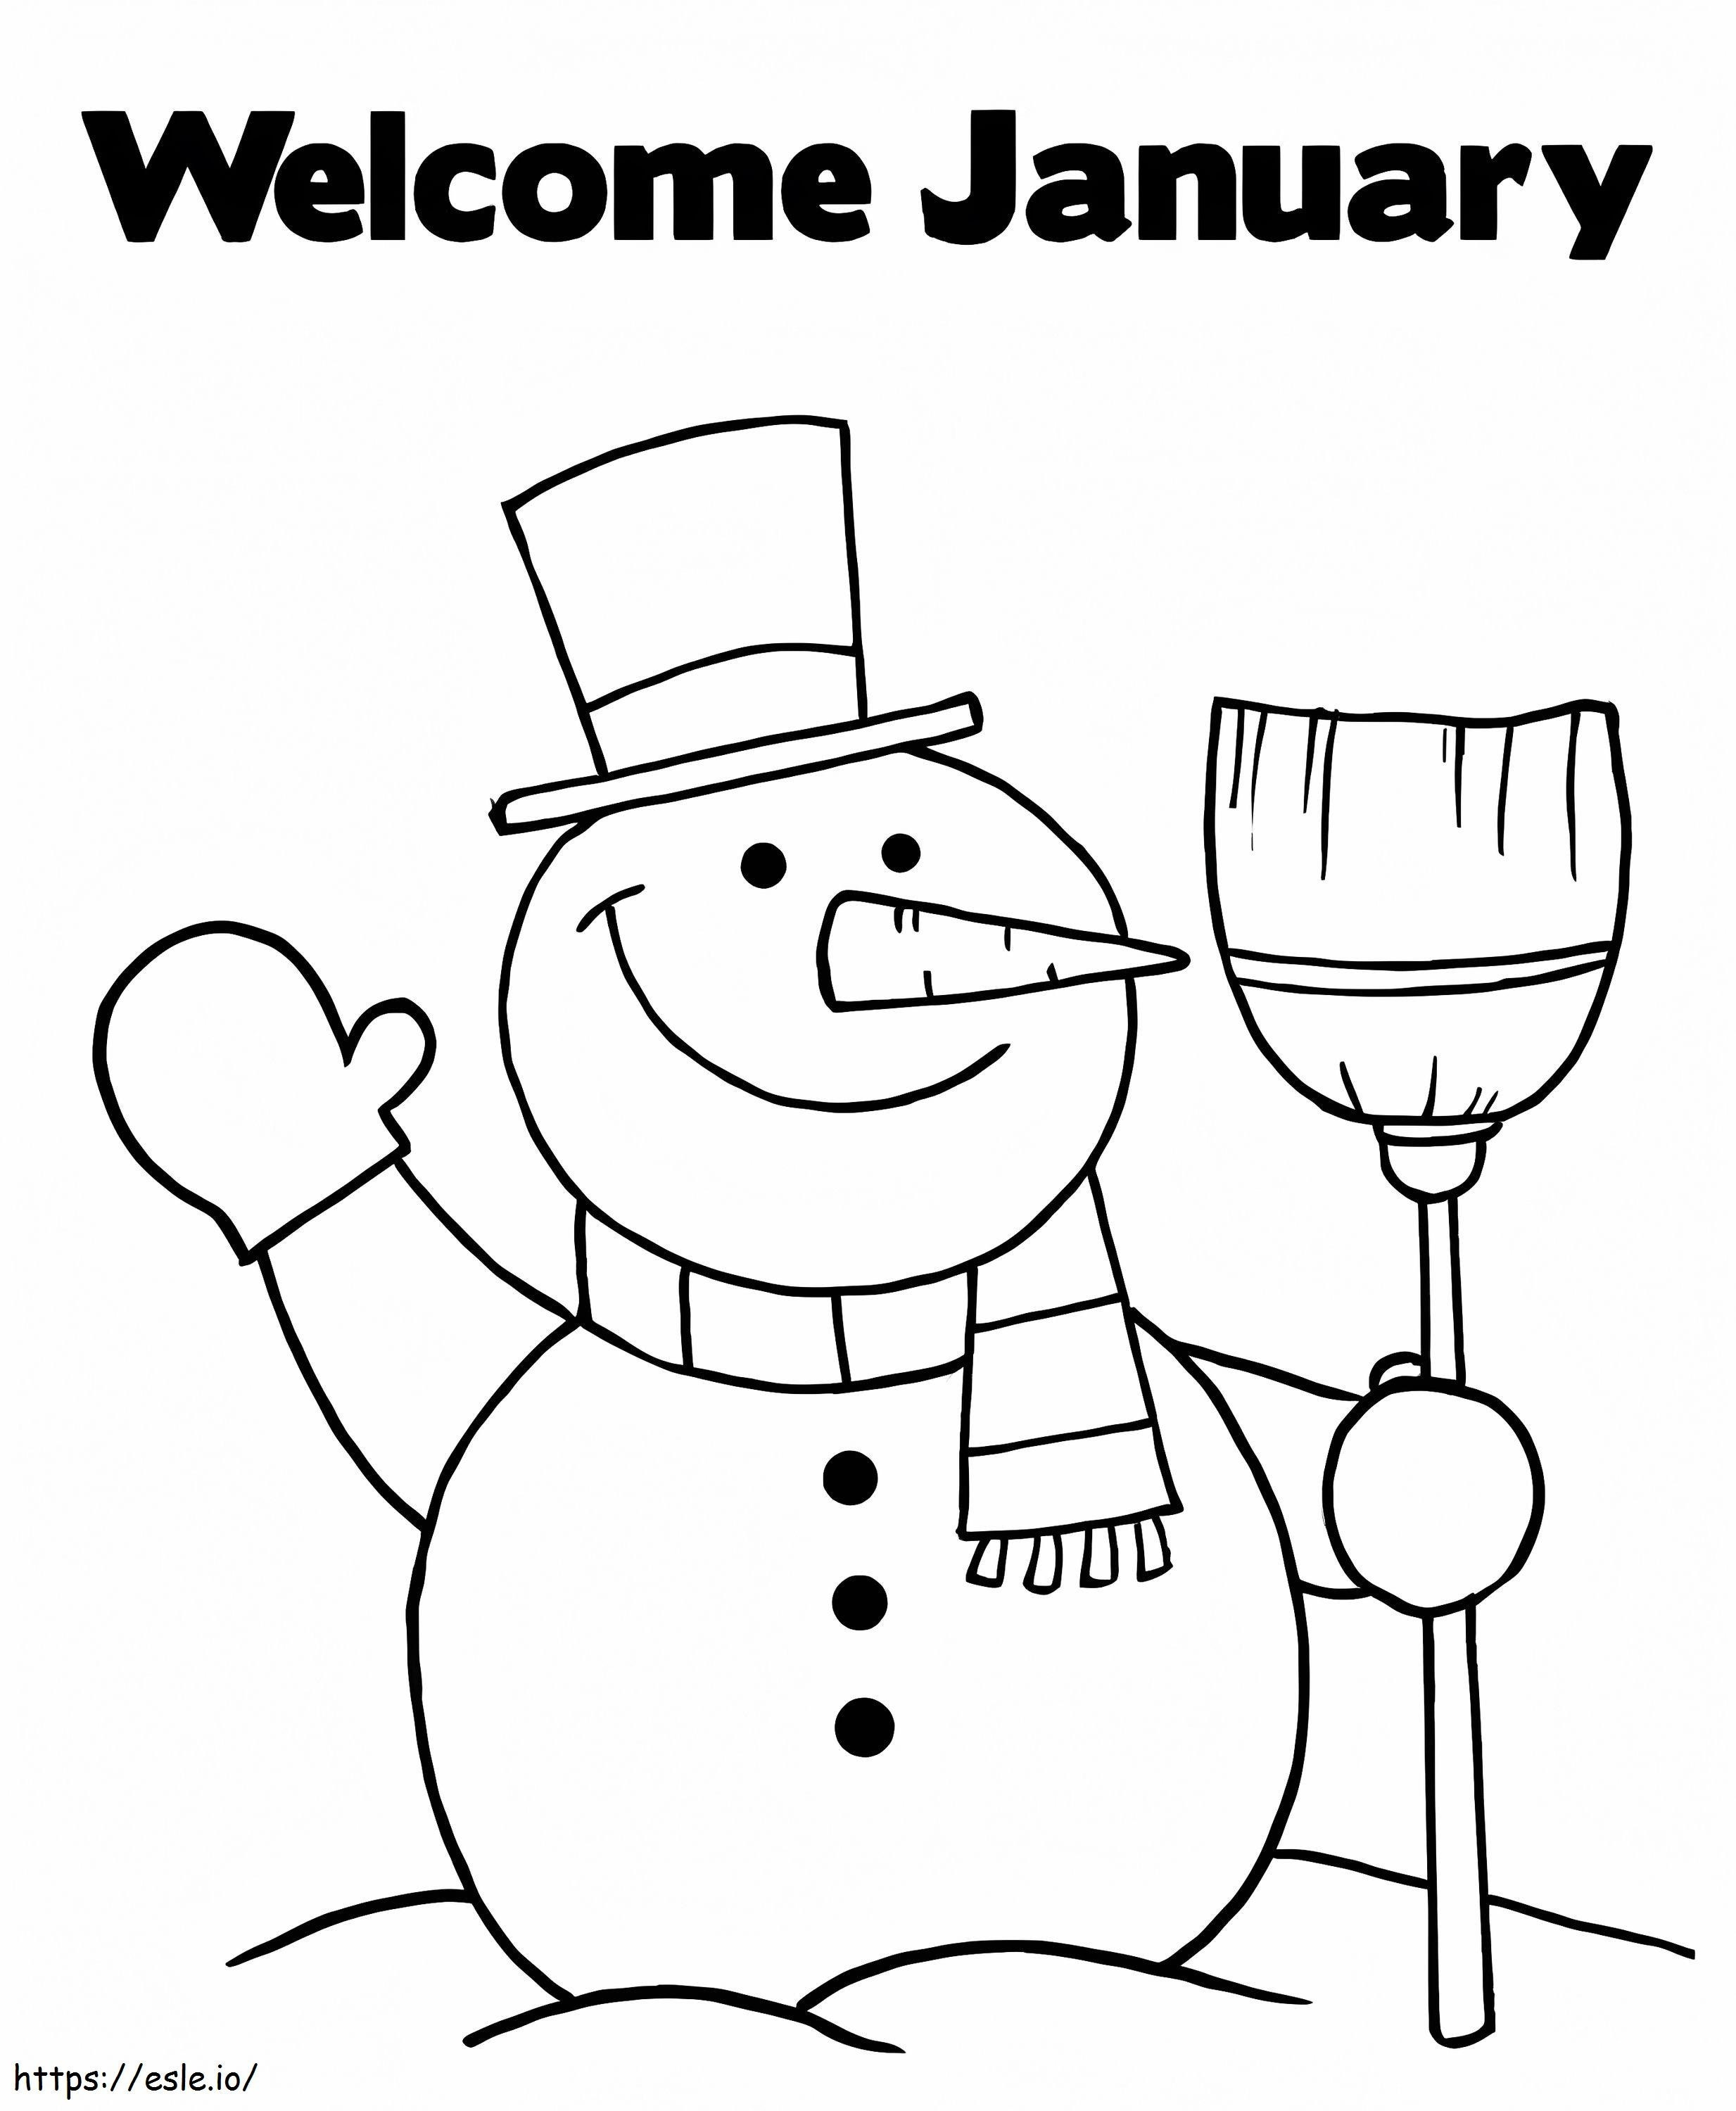 Boneco de neve bem-vindo janeiro para colorir